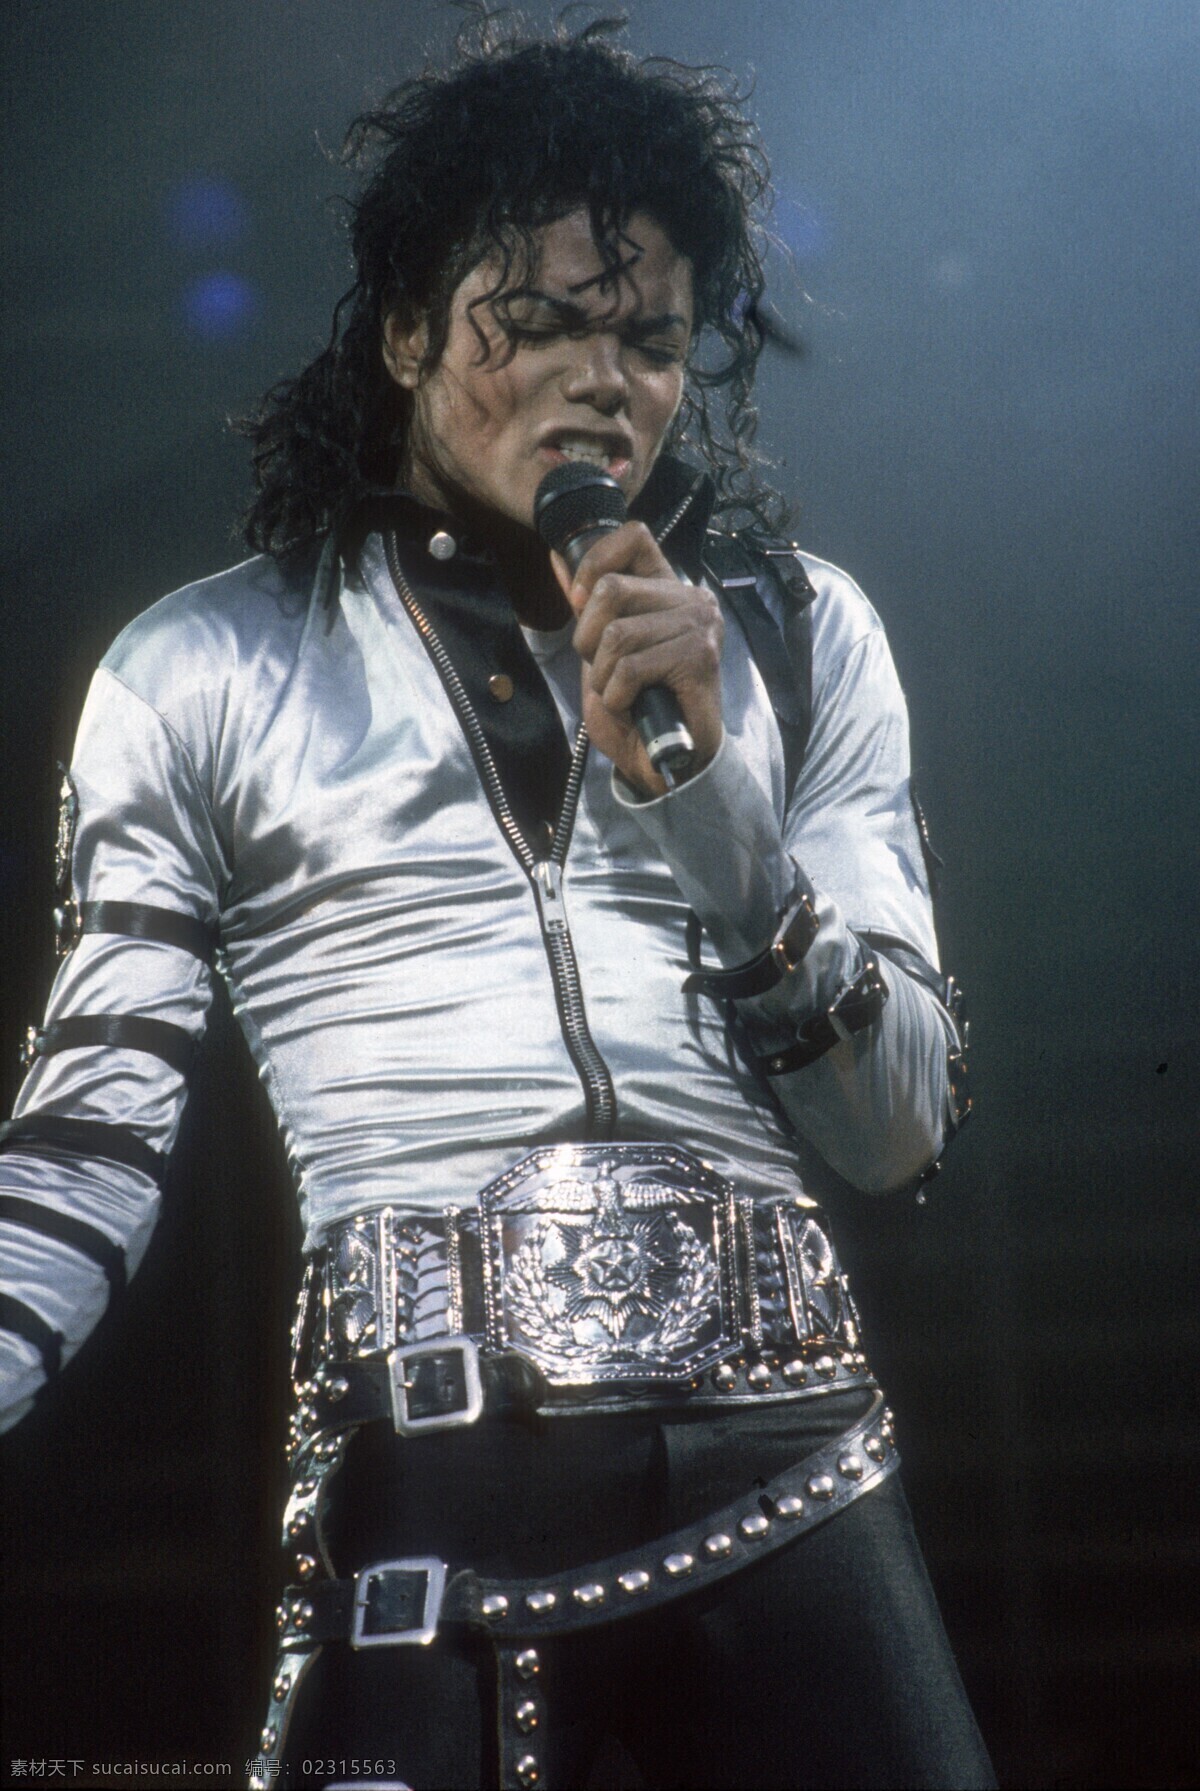 迈克尔杰克逊 迈克尔 杰克逊 演唱会 歌迷 流行音乐之王 明星偶像 人物图库